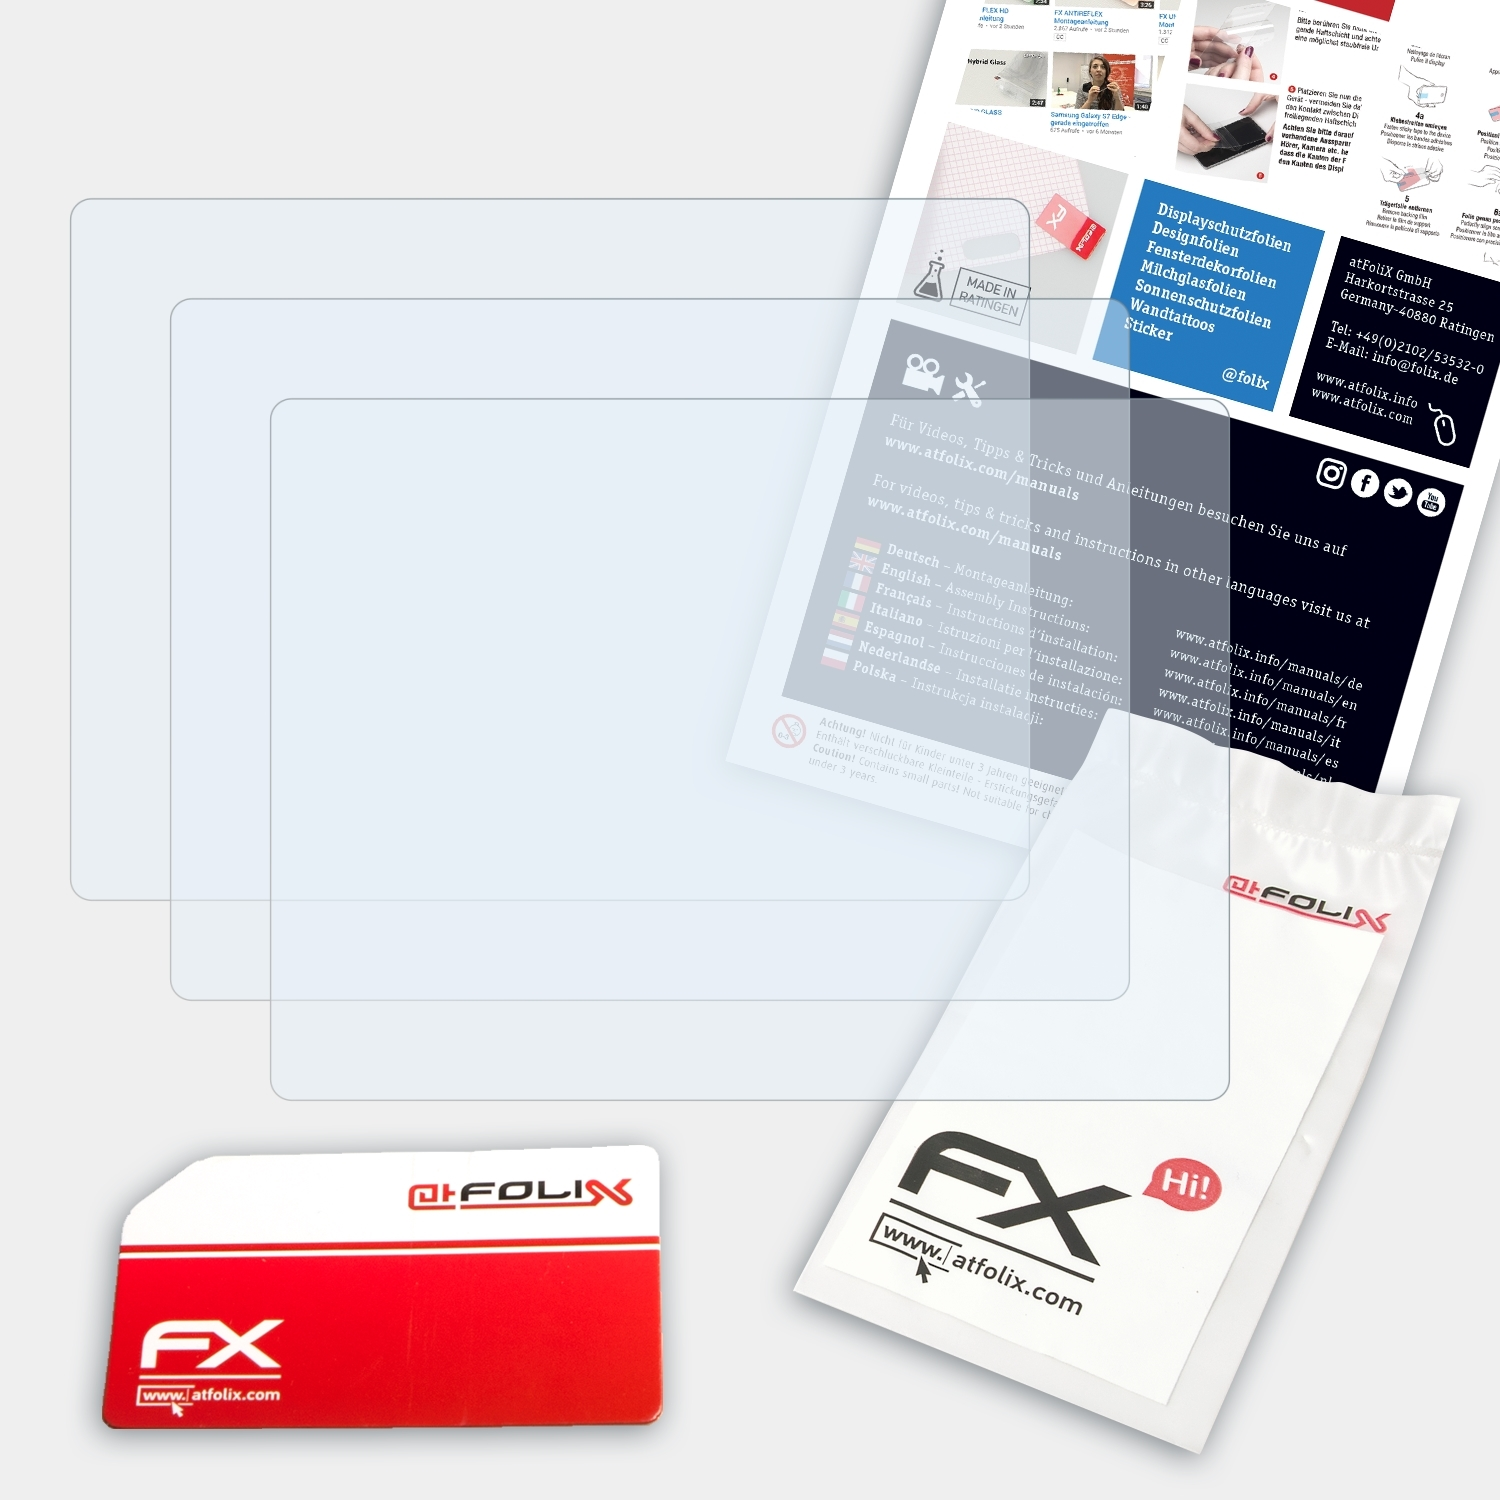 ATFOLIX Panasonic FX-Clear Lumix 3x DMC-TZ30) Displayschutz(für